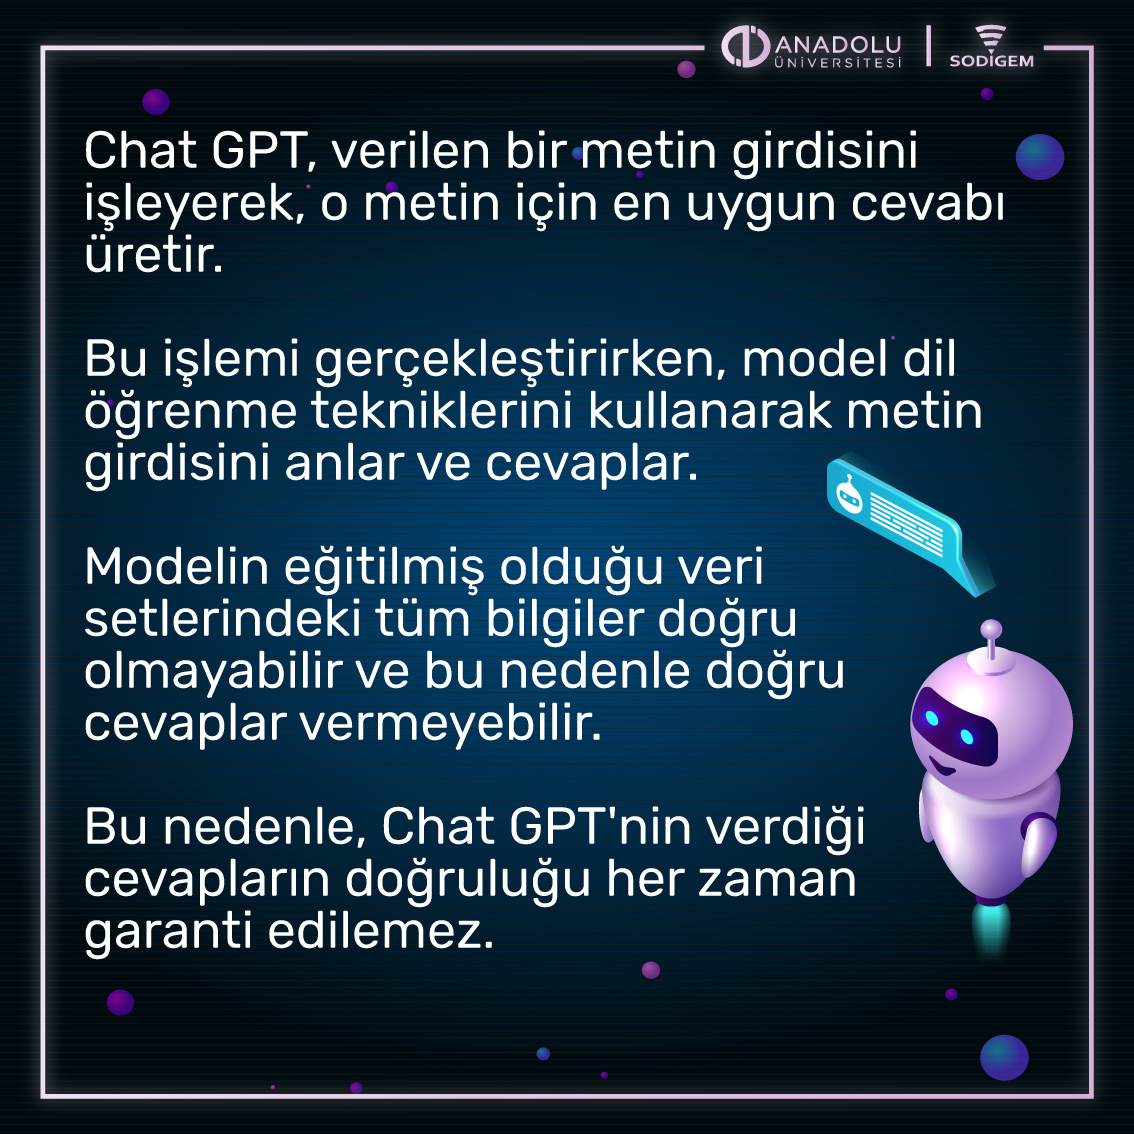 Chat GPT Nedir?

@Anadolu_Univ #SODİGEM #ChatGPT